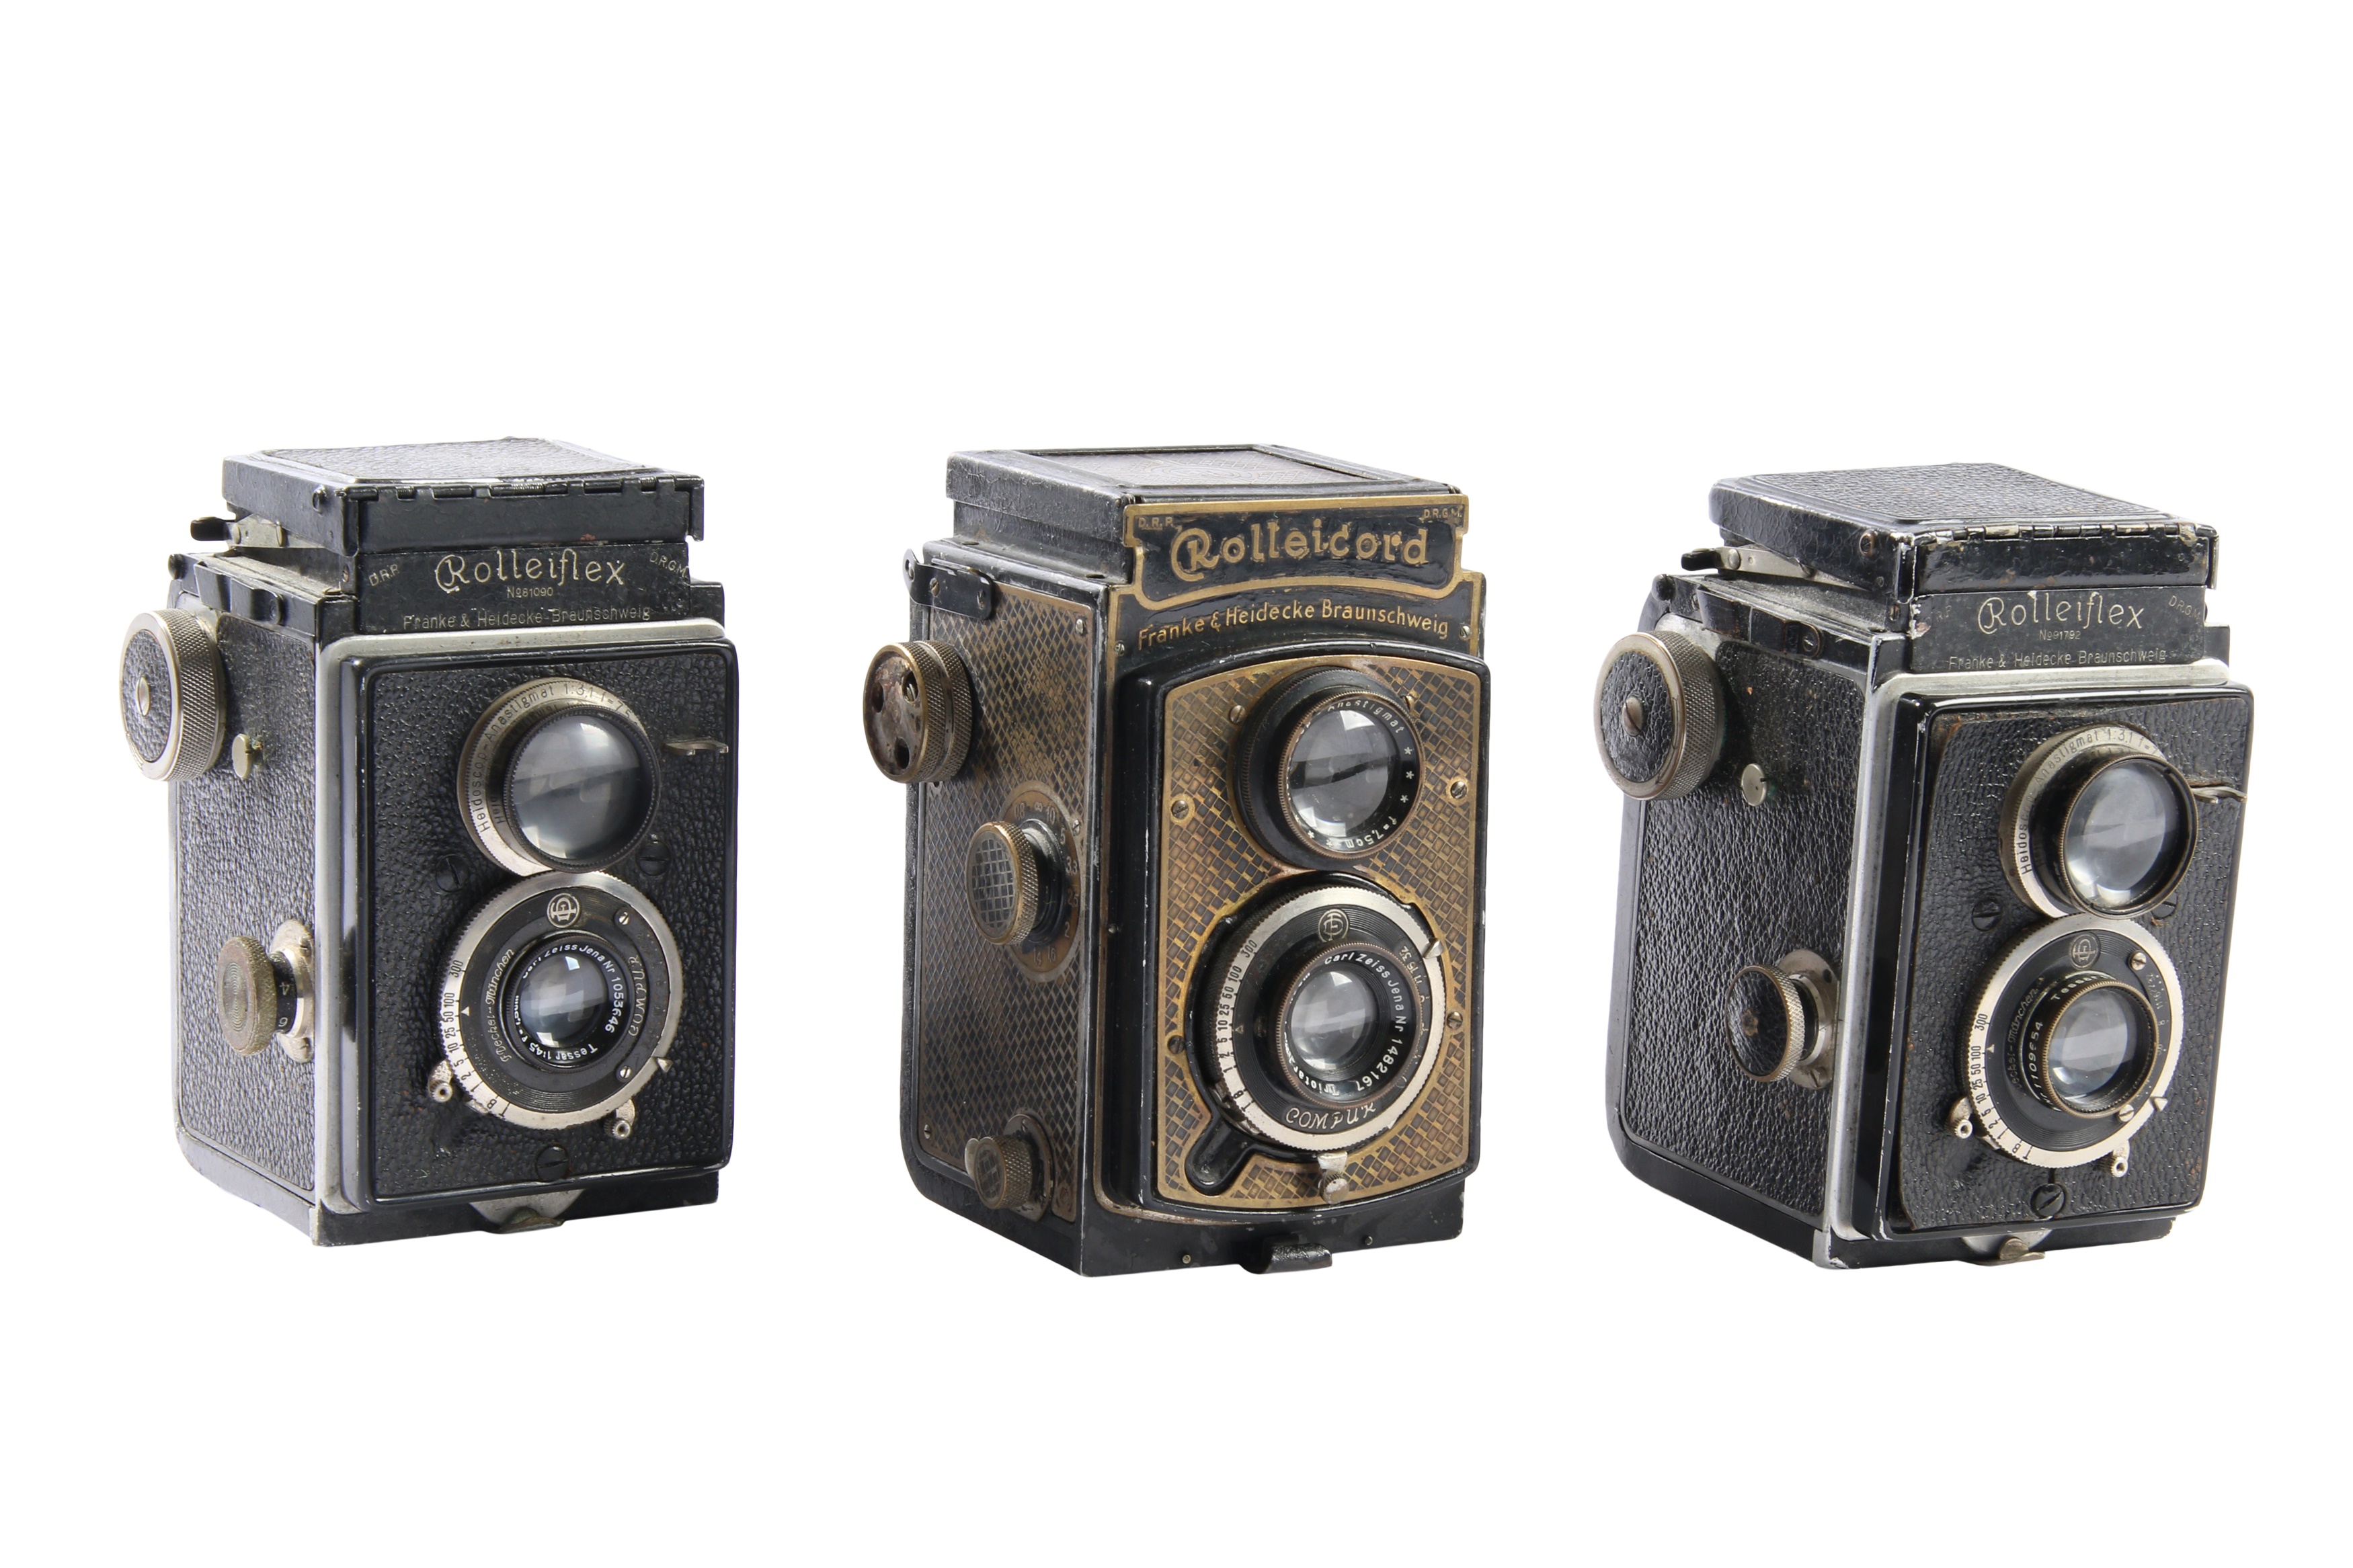 Rolleicord Tapeten & Two Rolleiflex Cameras.